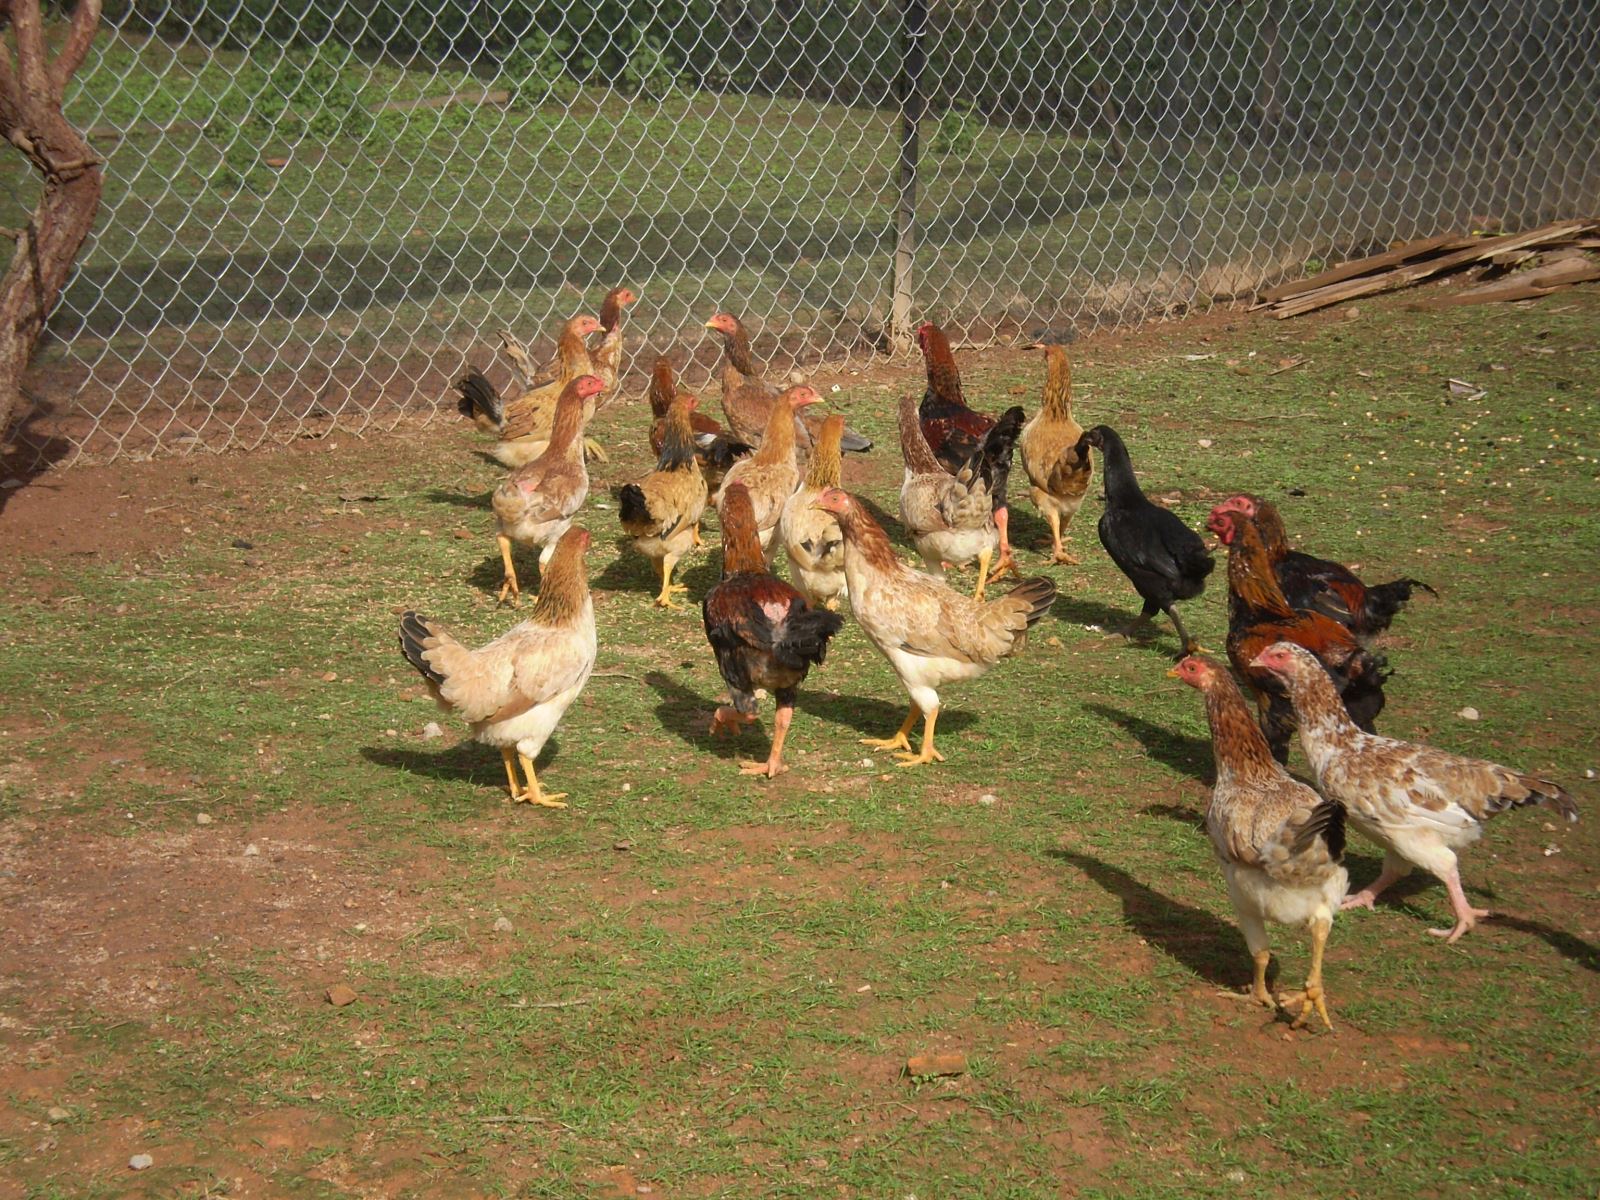 Mô hình nuôi gà ta thả vườn đã không còn xa lạ gì nữa với các hộ chăn nuôi